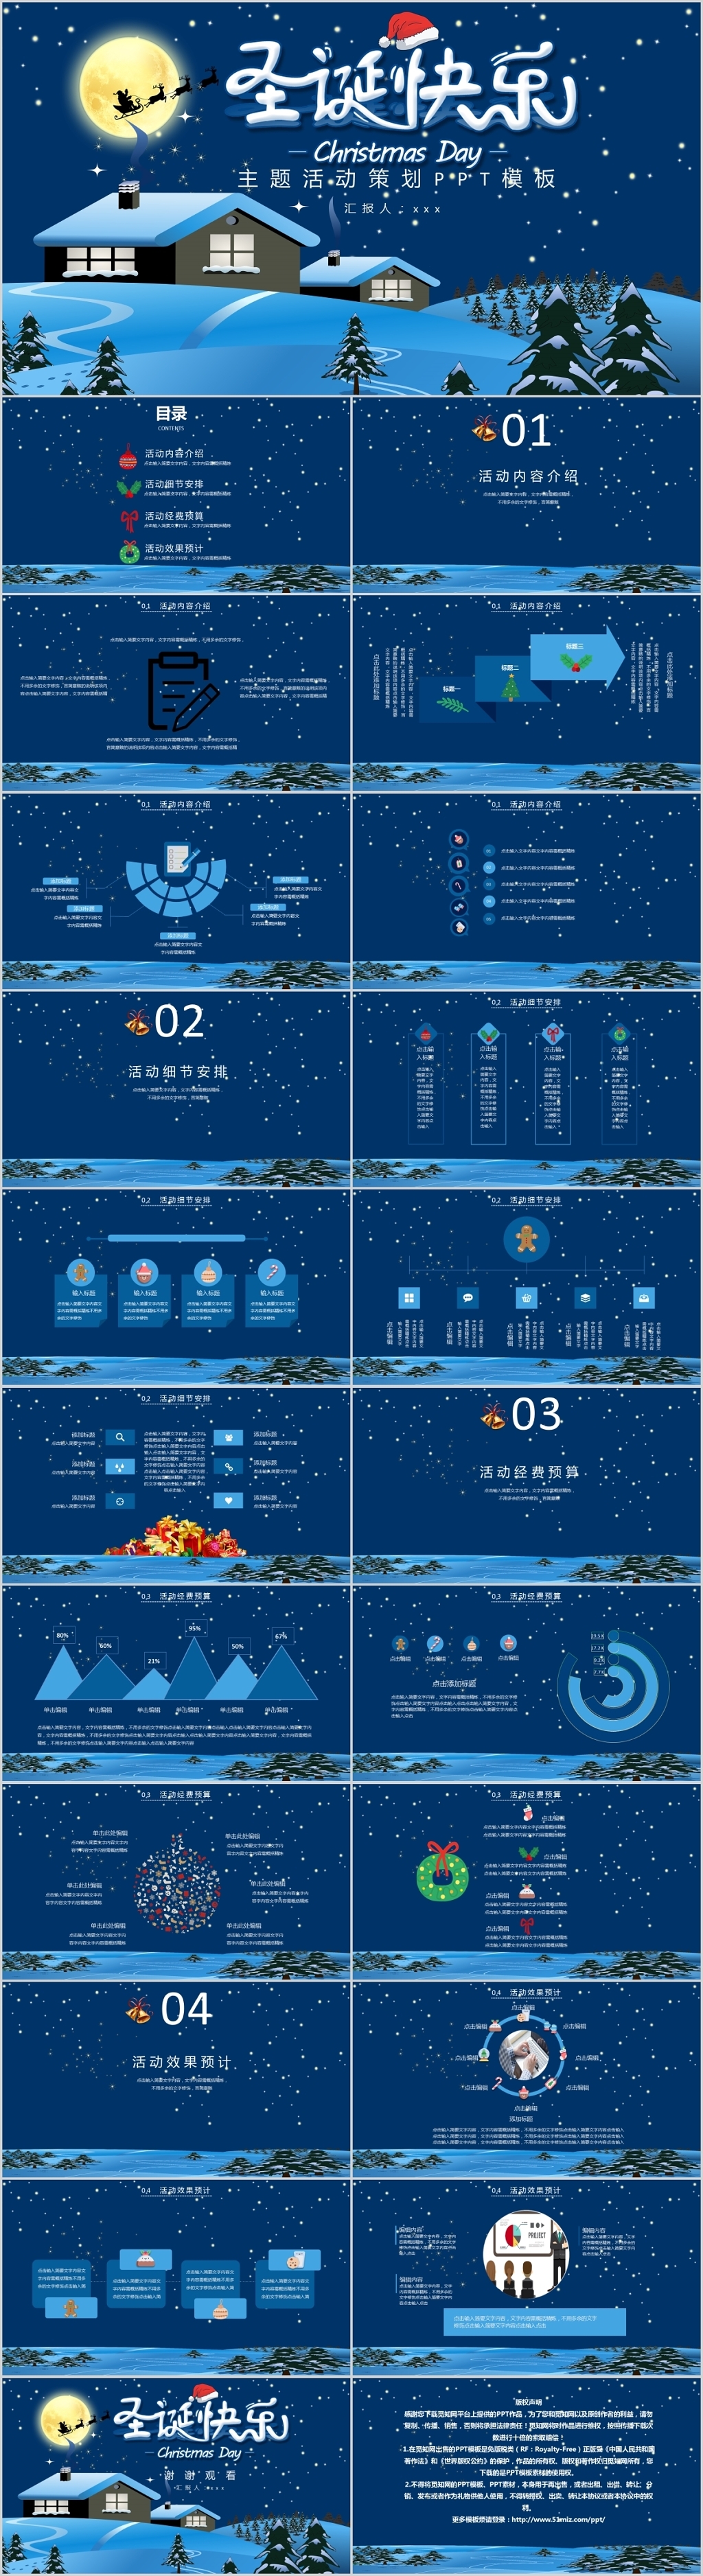 蓝色雪景西方传统节日圣诞节活动主题策划方案ppt模板